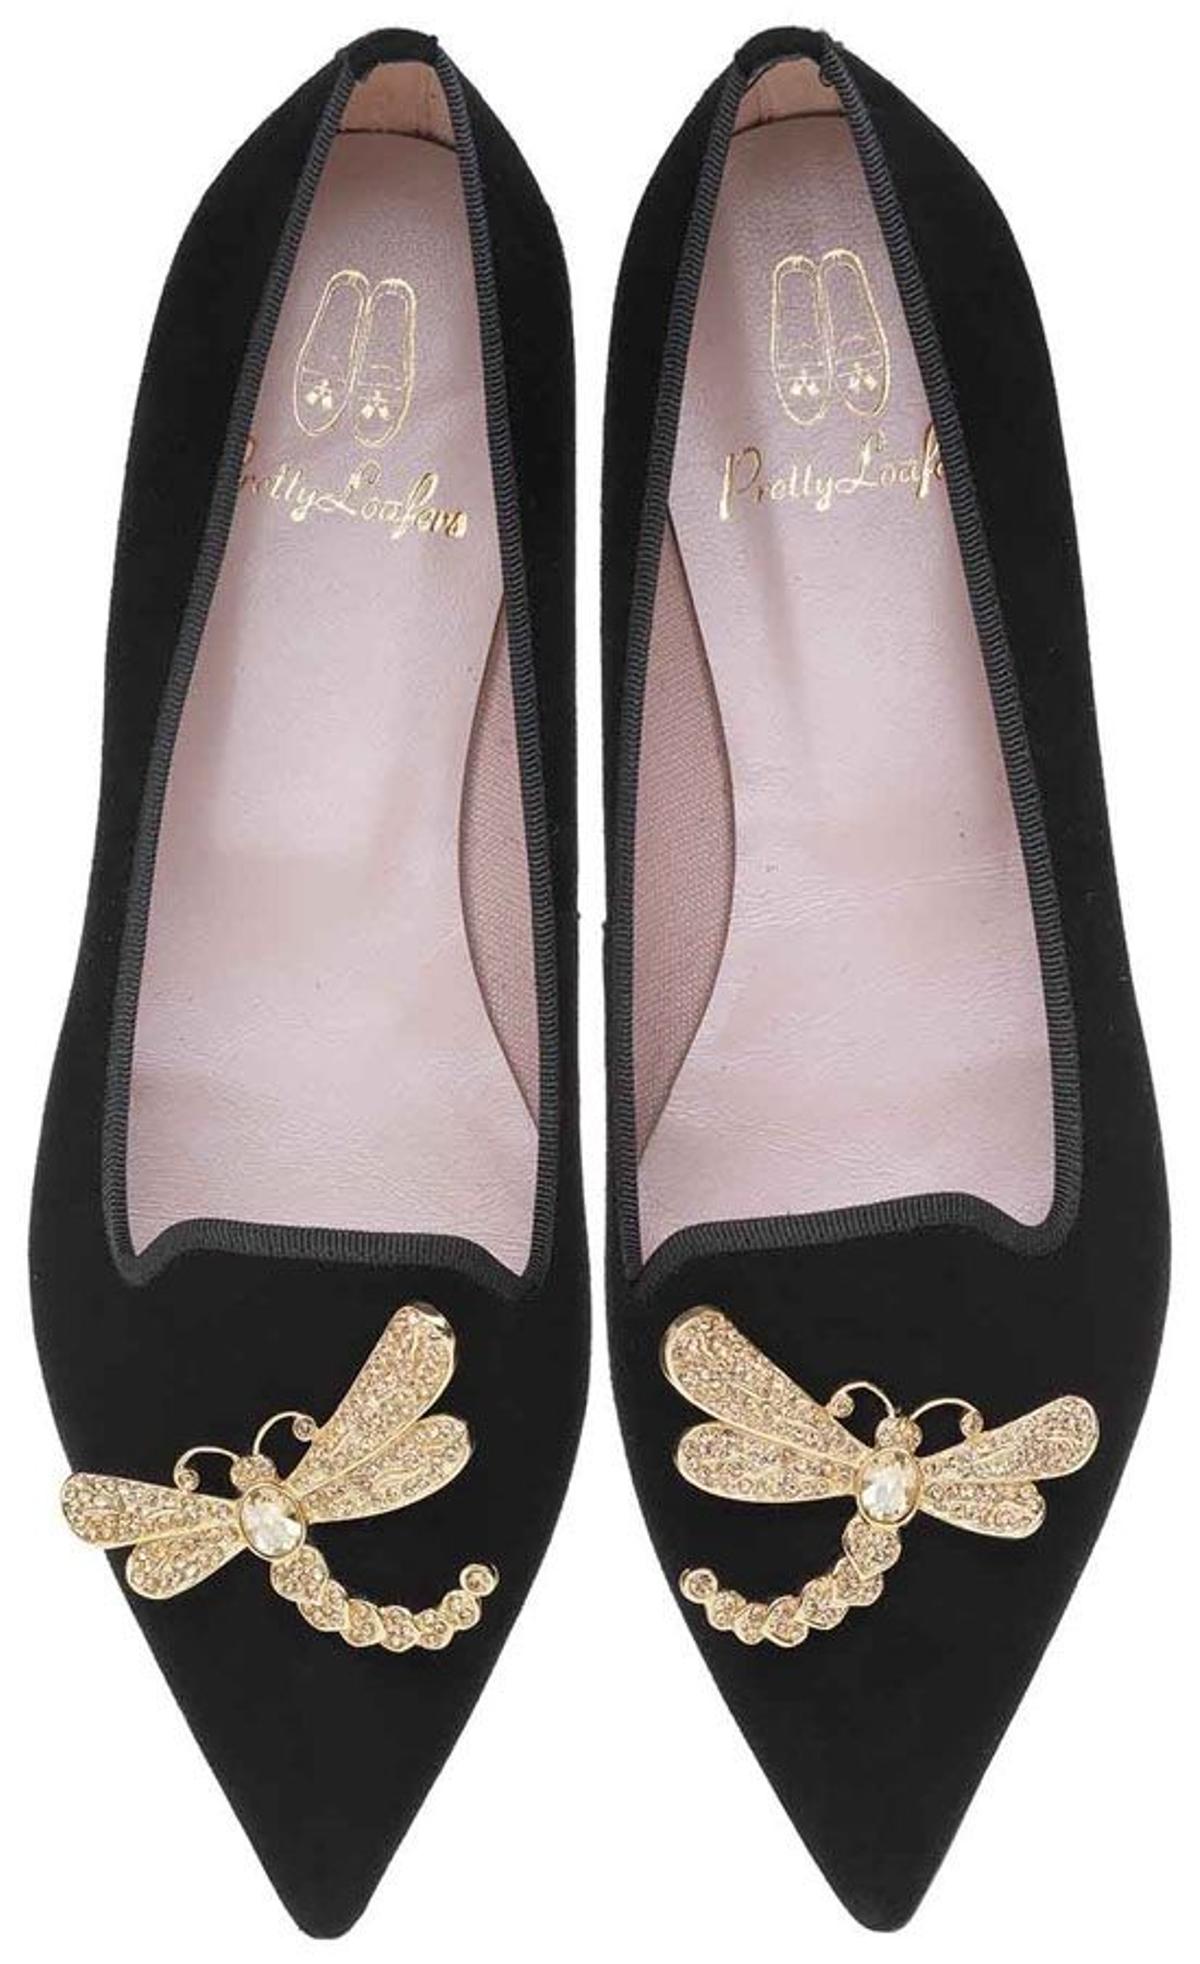 Accesorios que son una joya: zapatos de Pretty Ballerinas